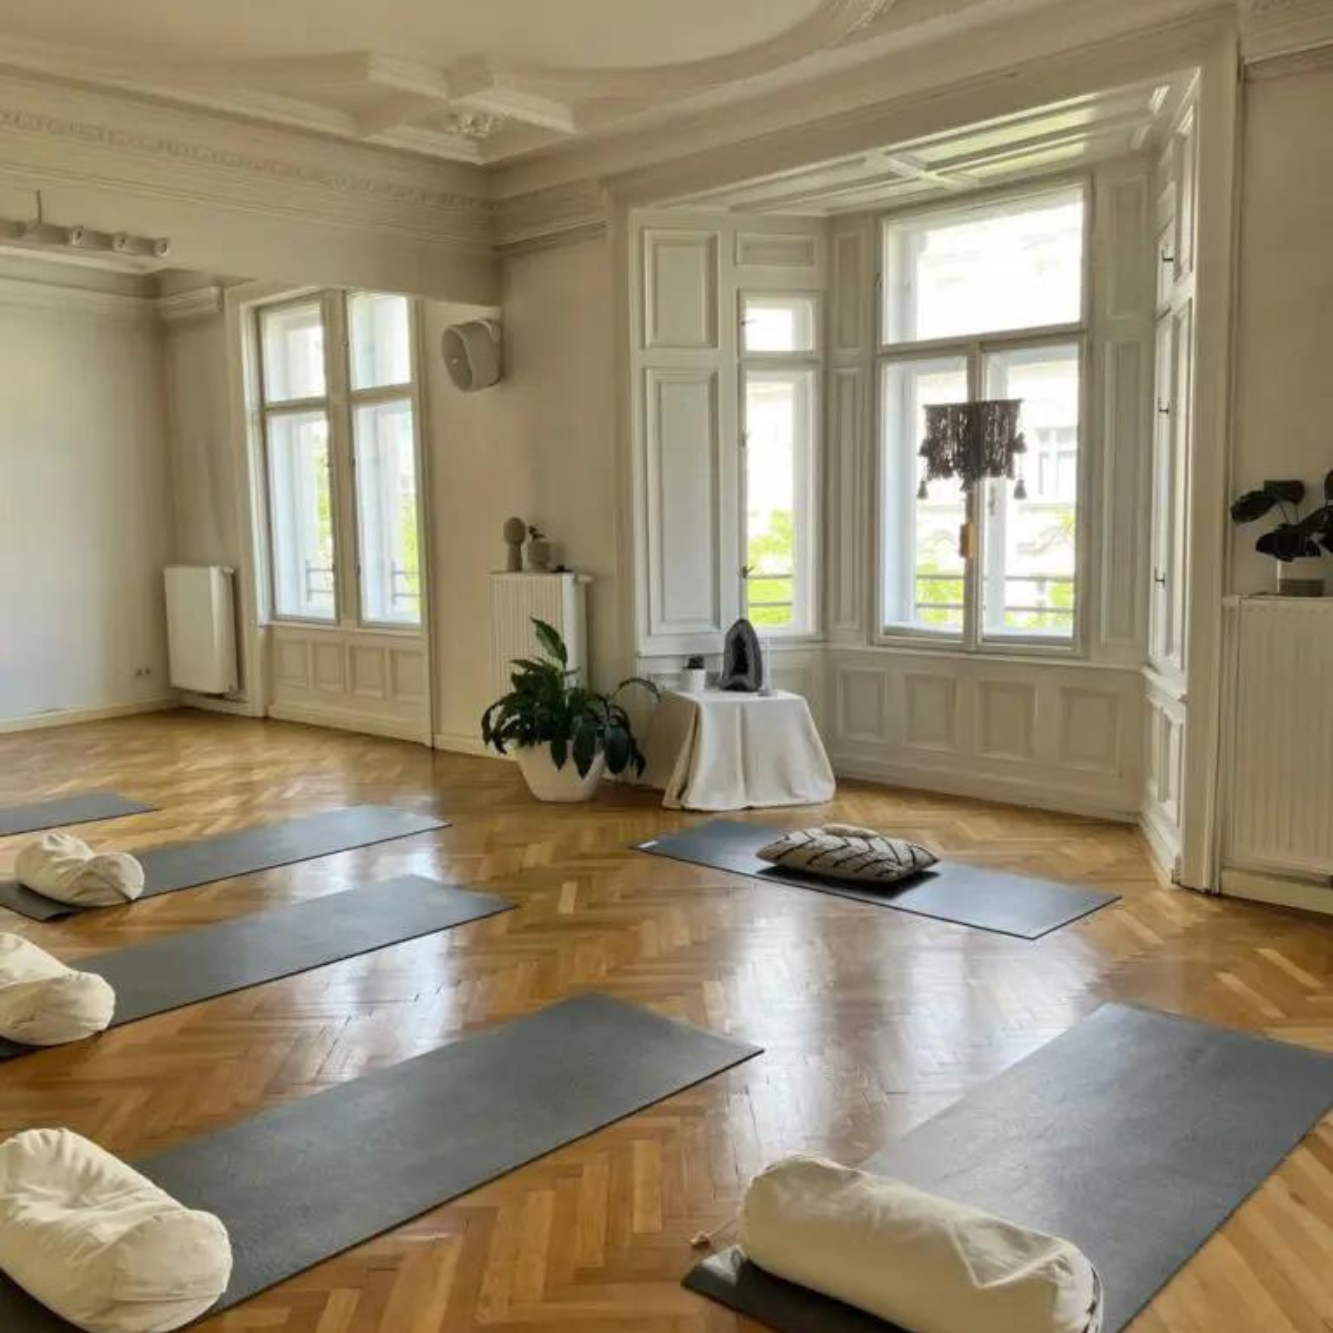 Typischer Wiener Altbau als Yogastudio genutzt mit den dunklen hejhej-mats und den hejhej-bolstern